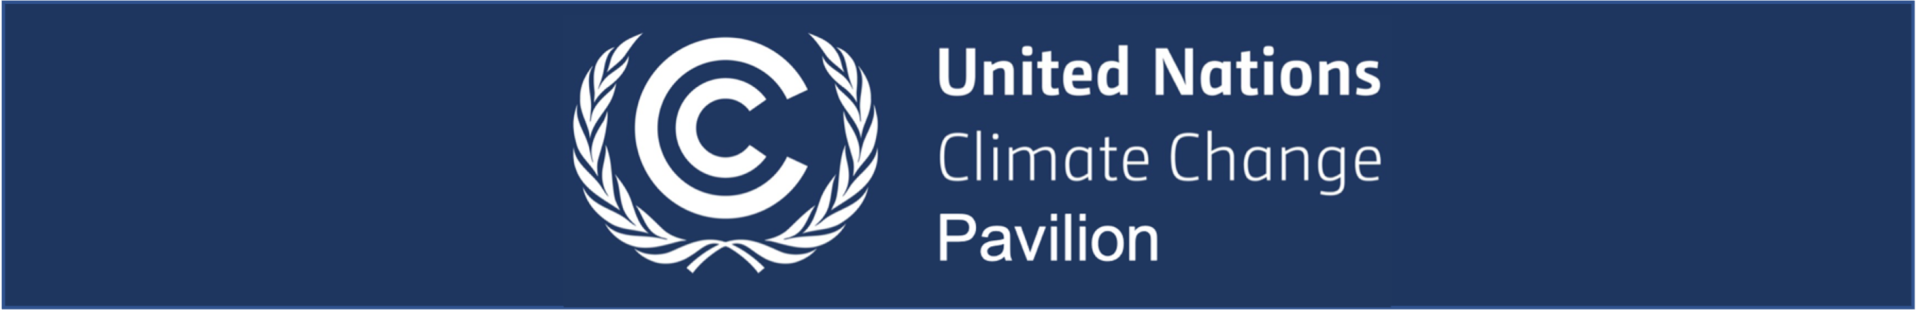 UNFCCC Pavilion Banner final COP27